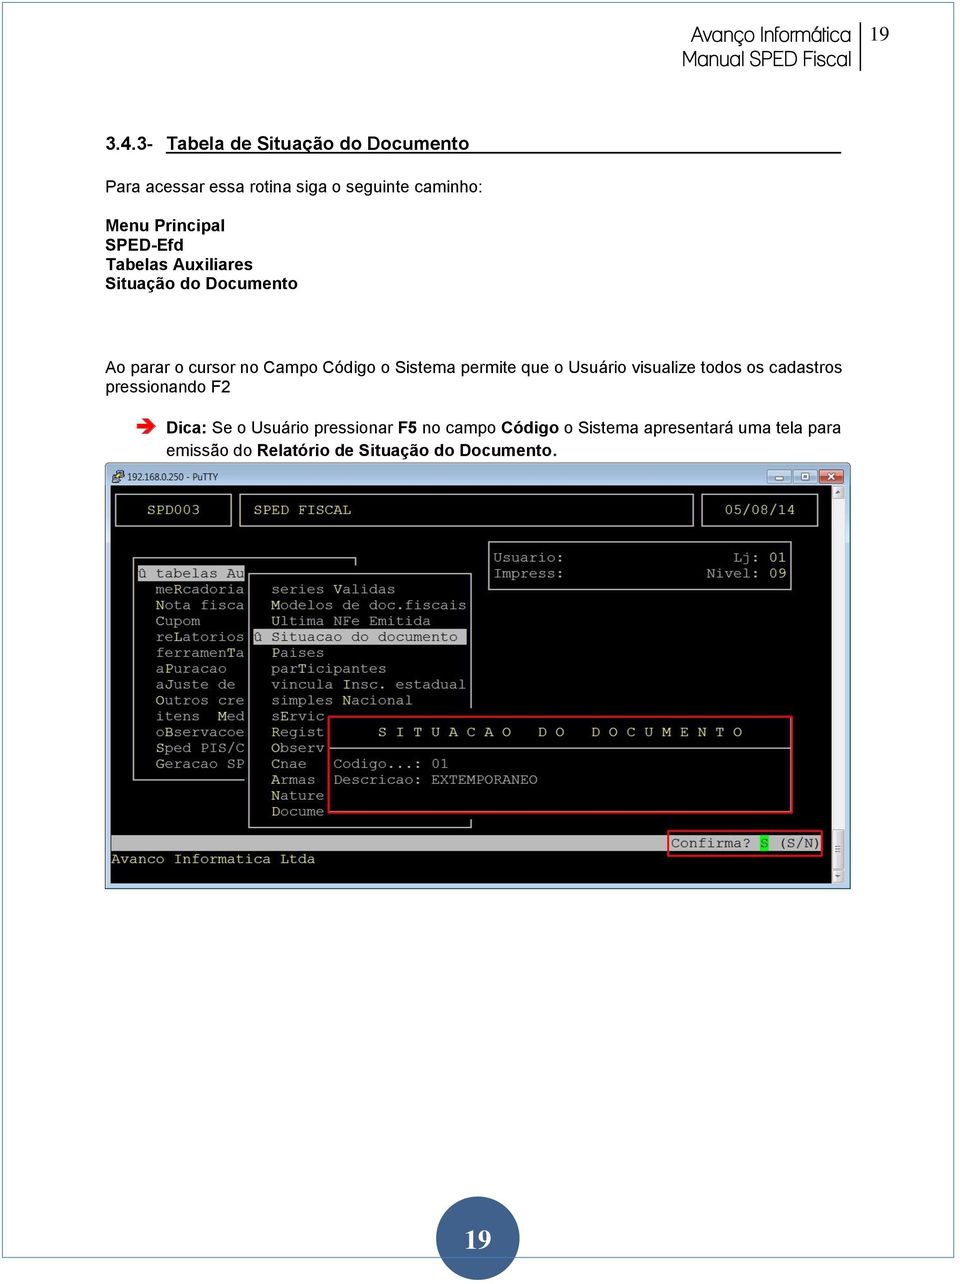 SPED-Efd Tabelas Auxiliares Situação do Documento Ao parar o cursor no Campo Código o Sistema